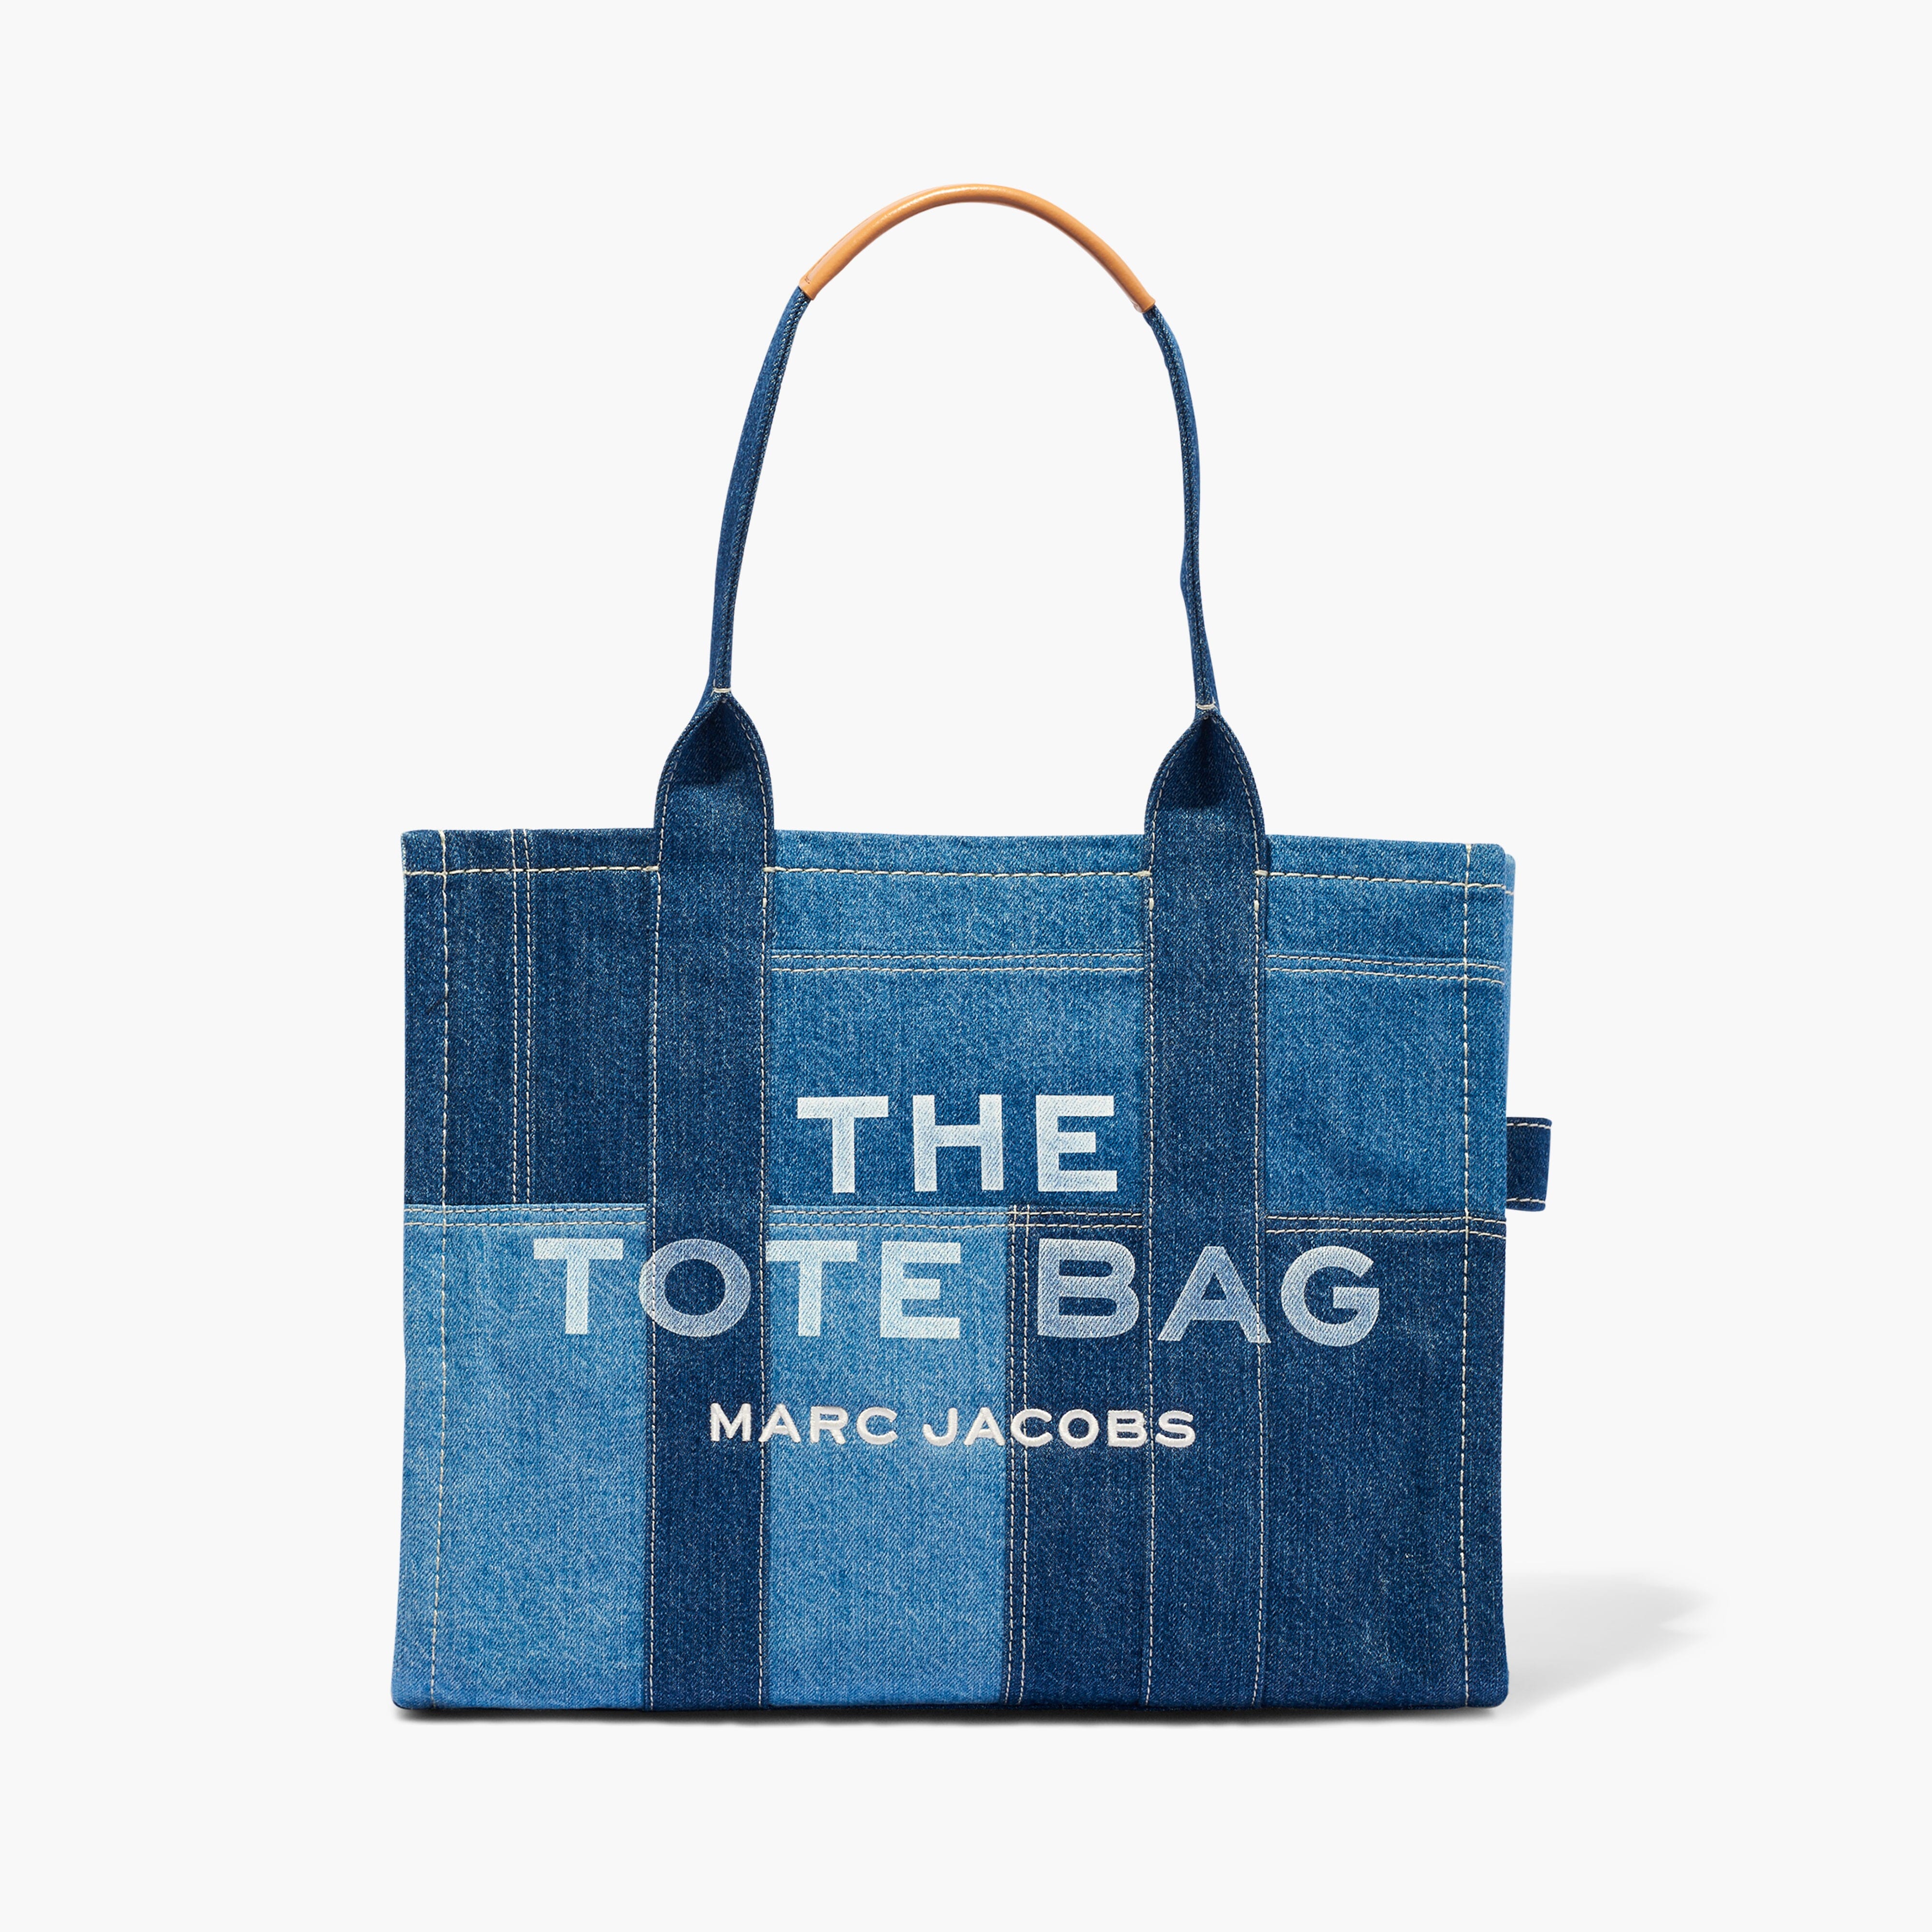 MARC JACOBS - H018M06FA21-422 - The Large Tote Bag - Blue Denim Borse Marc Jacobs 